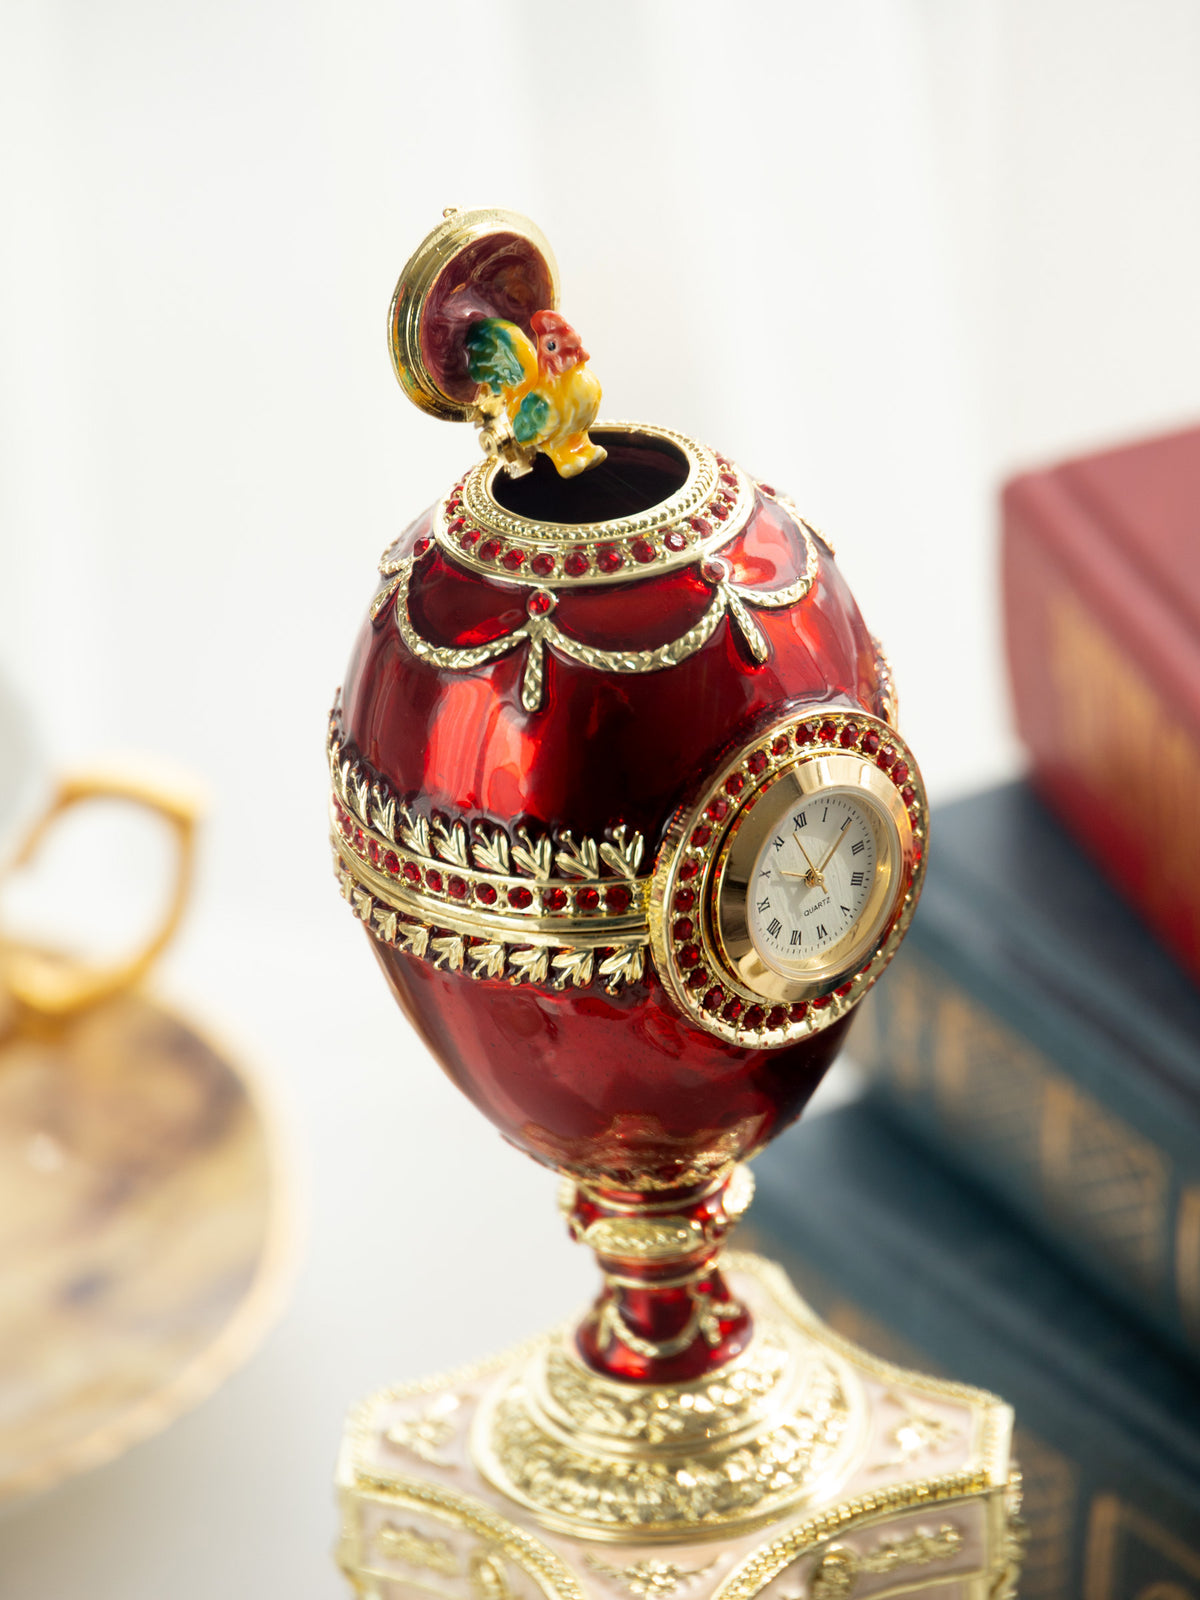 Oeuf de Fabergé rouge avec une perle et une horloge